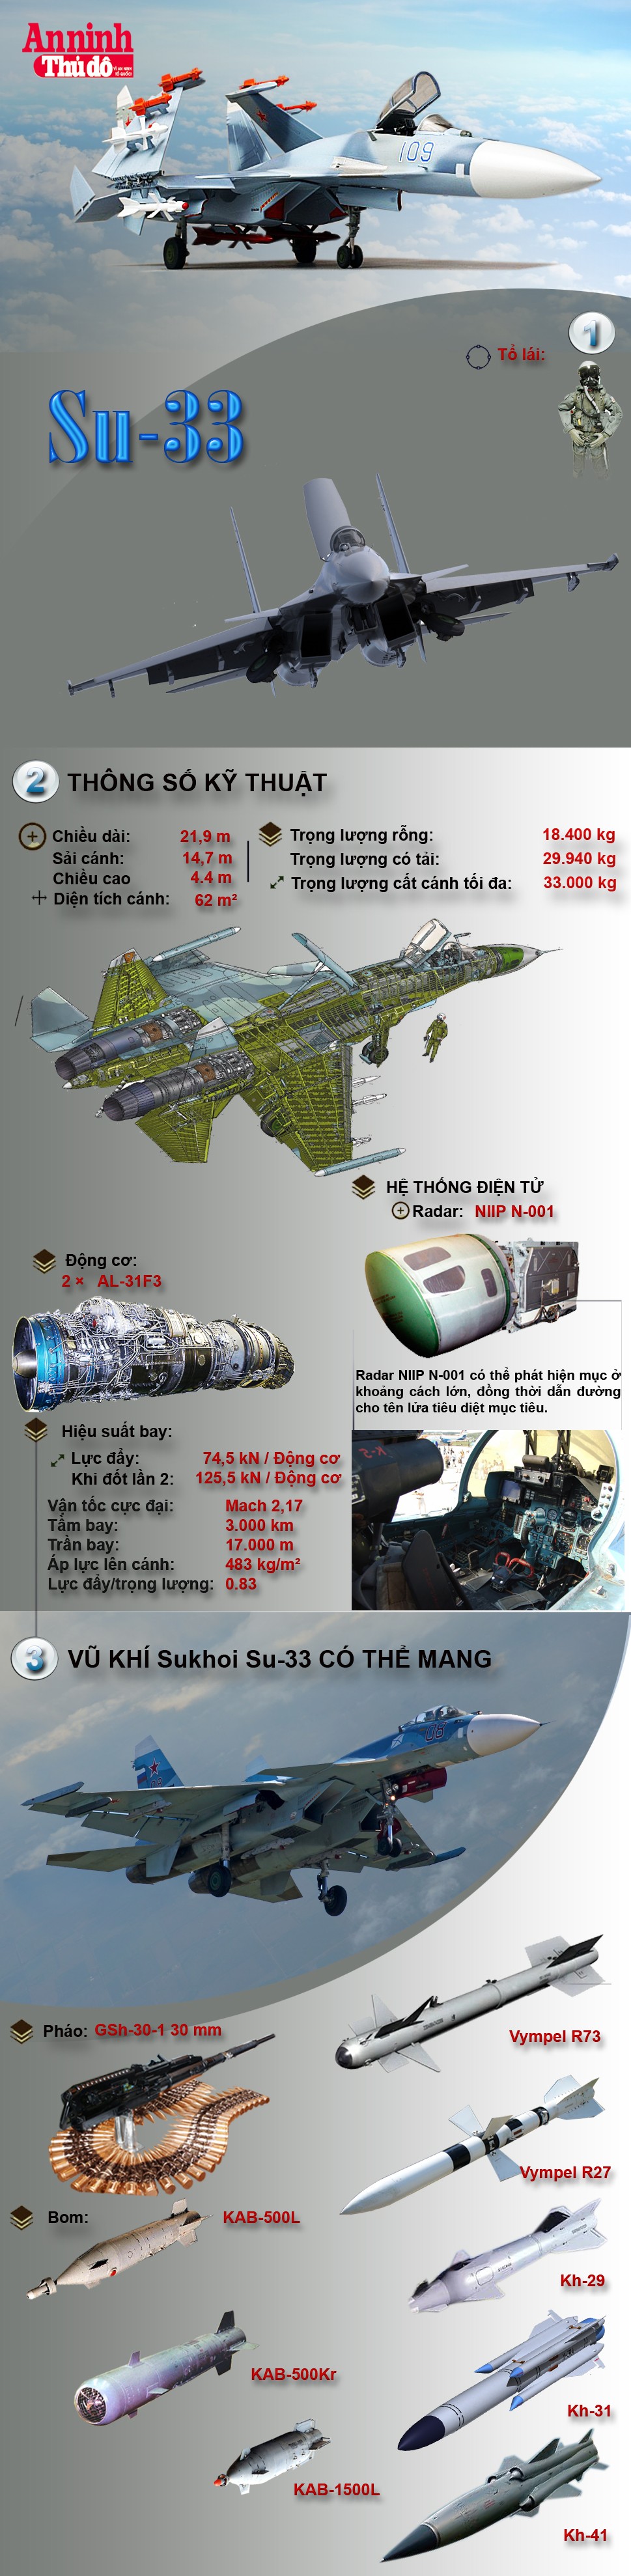 [Infographic] Sukhoi Su-33–Sức mạnh tiêm kích hạm hạng nặng của Nga ảnh 2